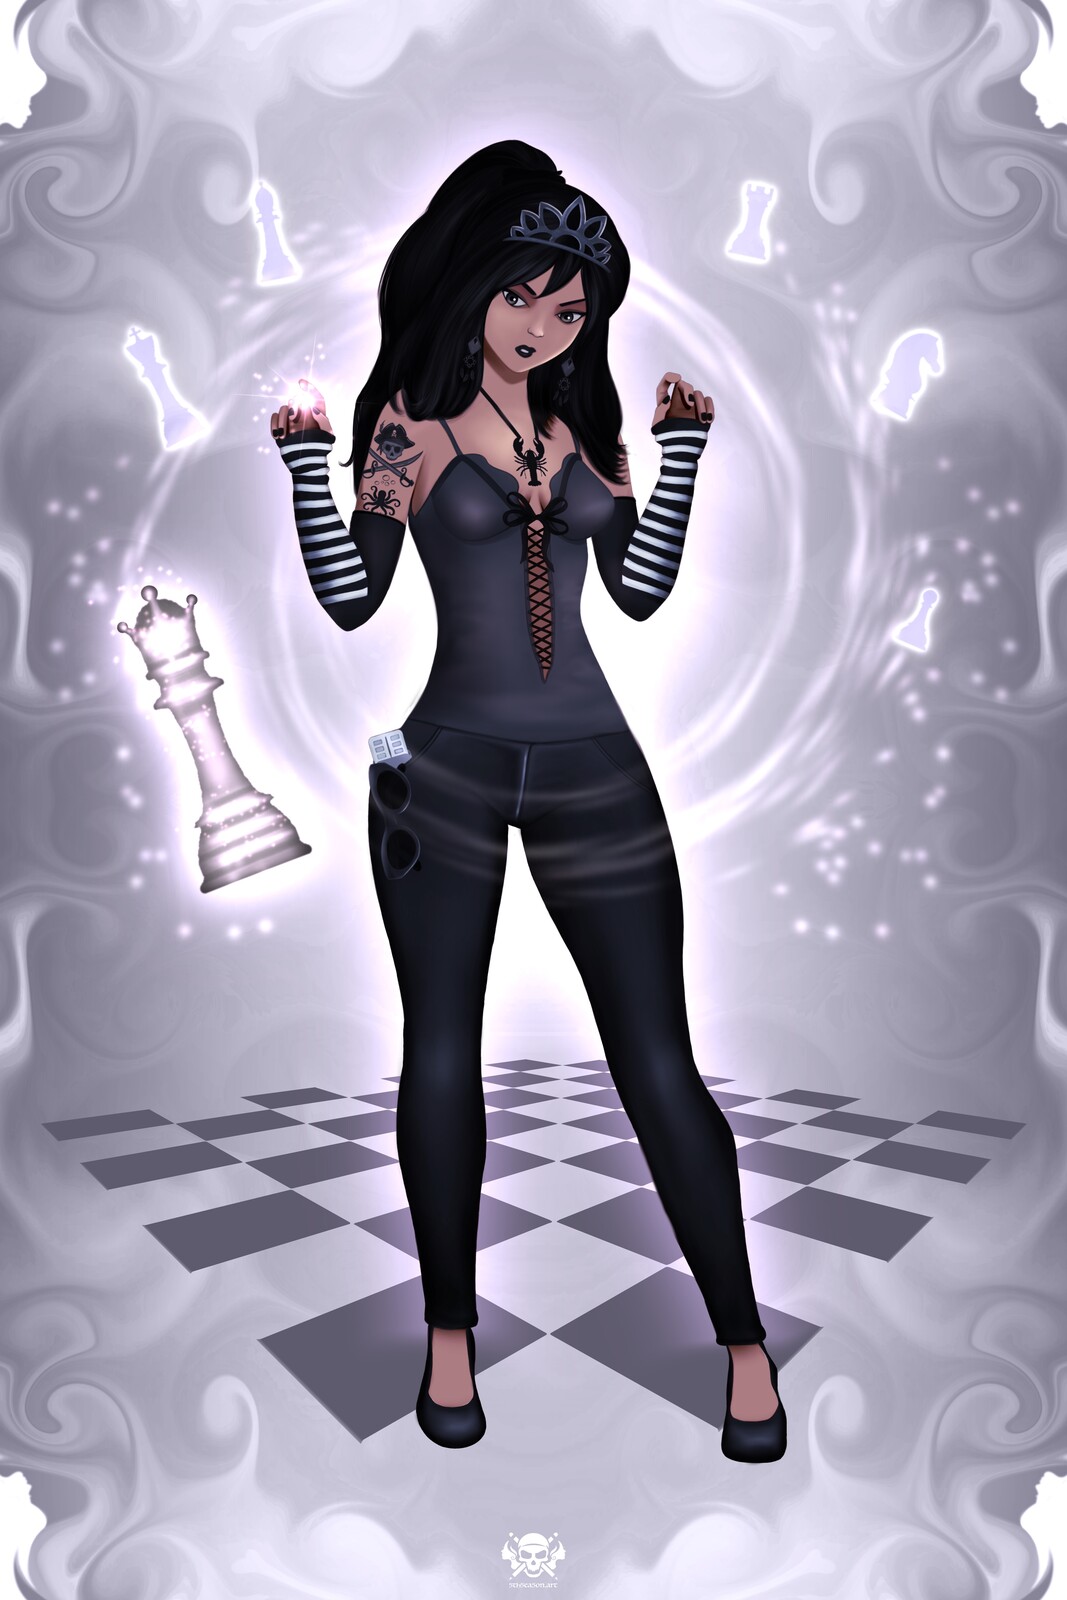 Queen Chess Player - 555 Art #2